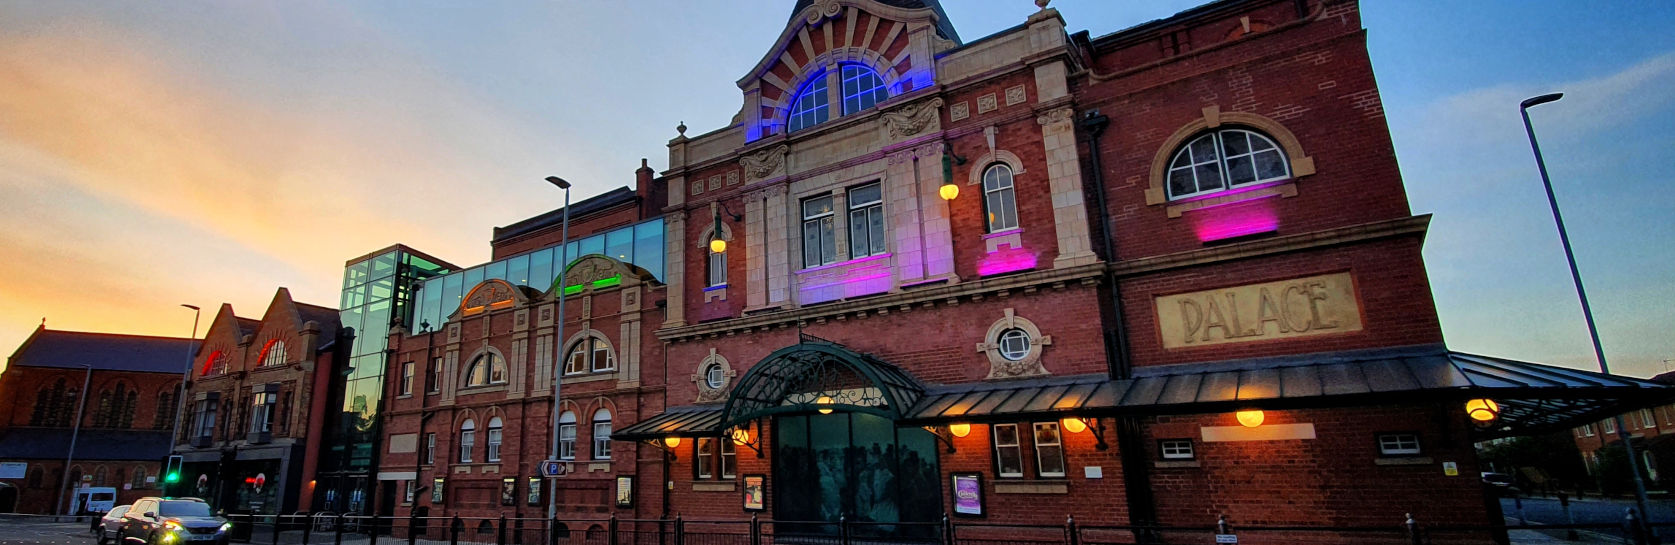 Darlington Hippodrome lit up for Pride Month